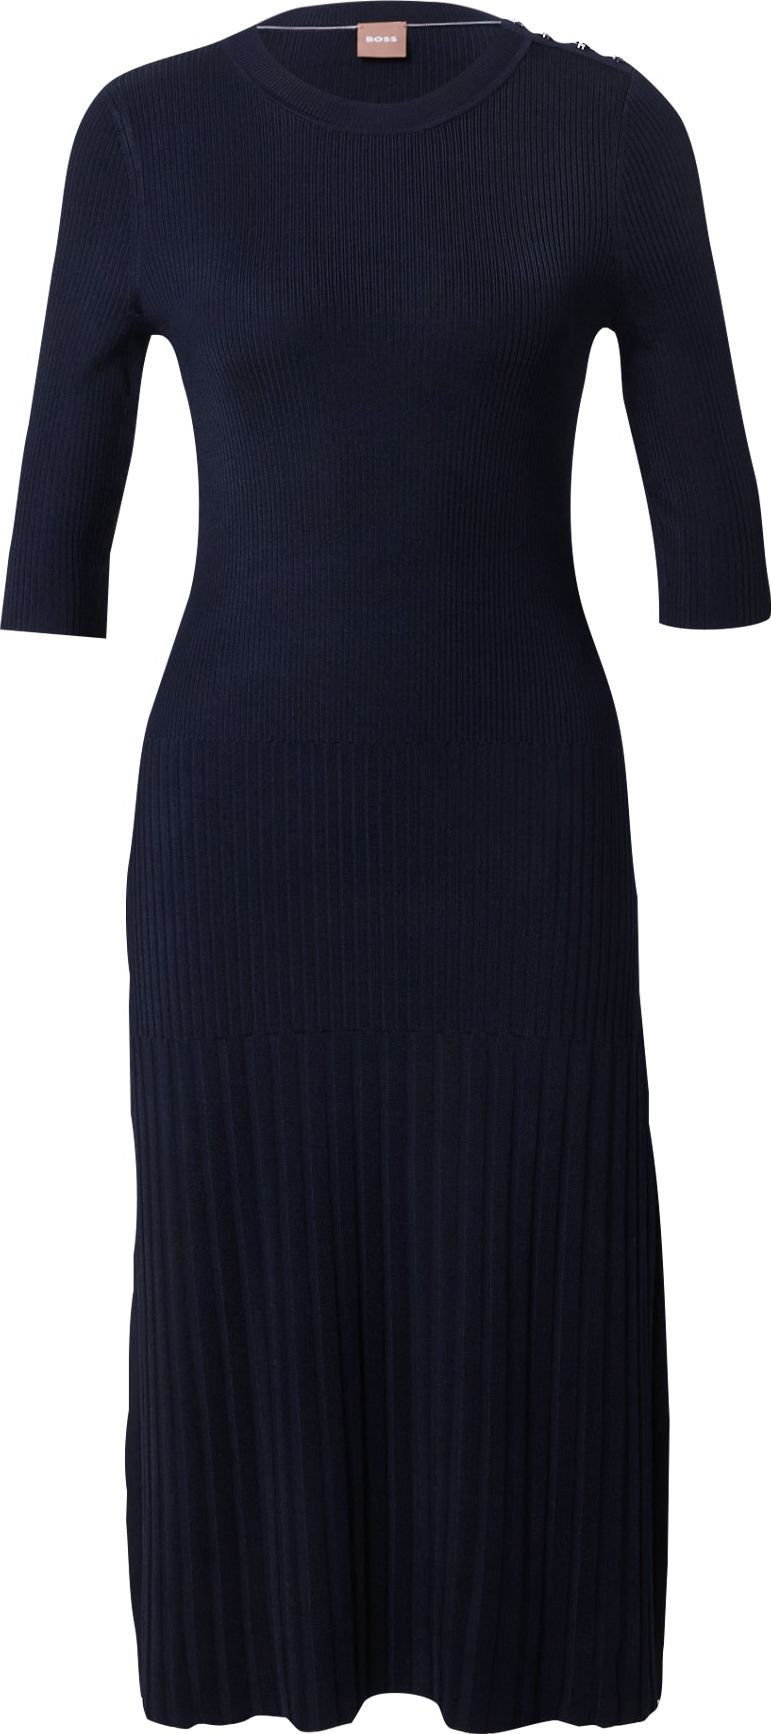 Úpletové šaty 'Fonzipona' BOSS Black námořnická modř